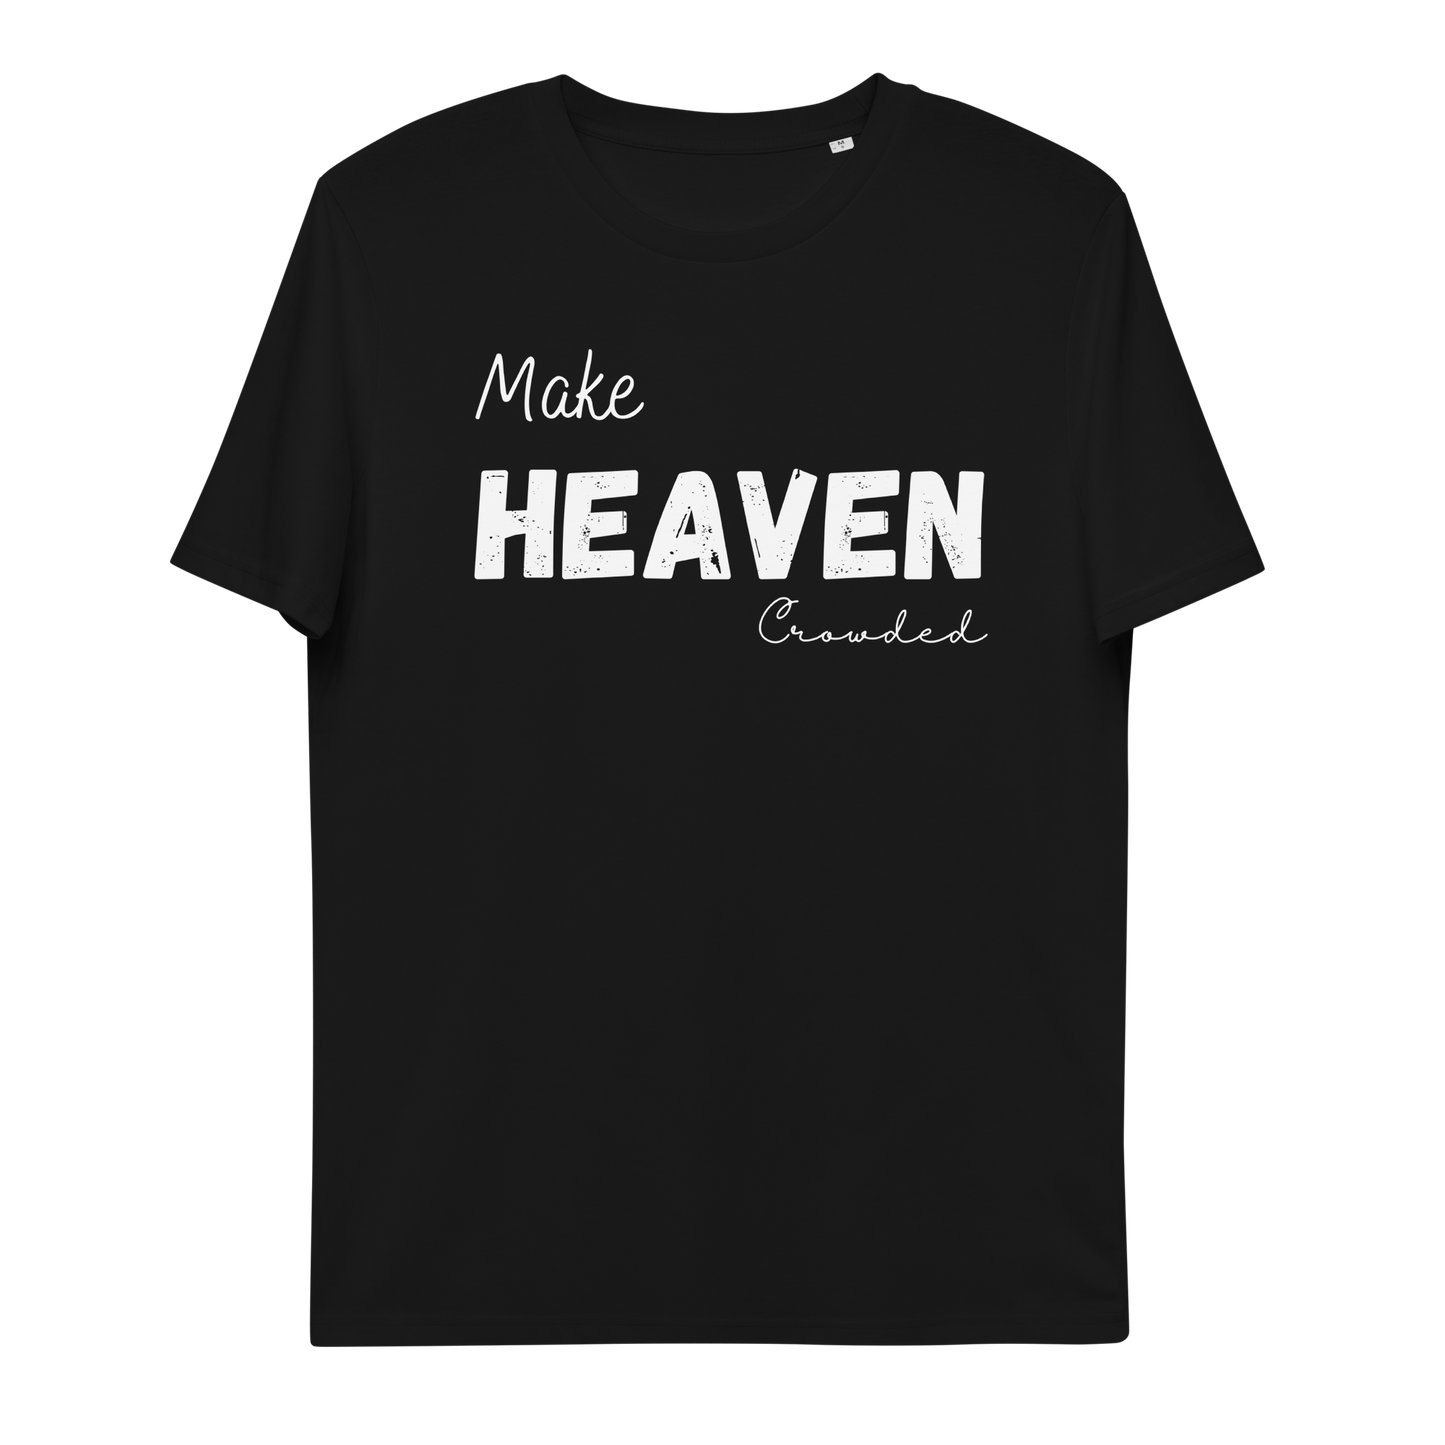 Make Heaven crowded